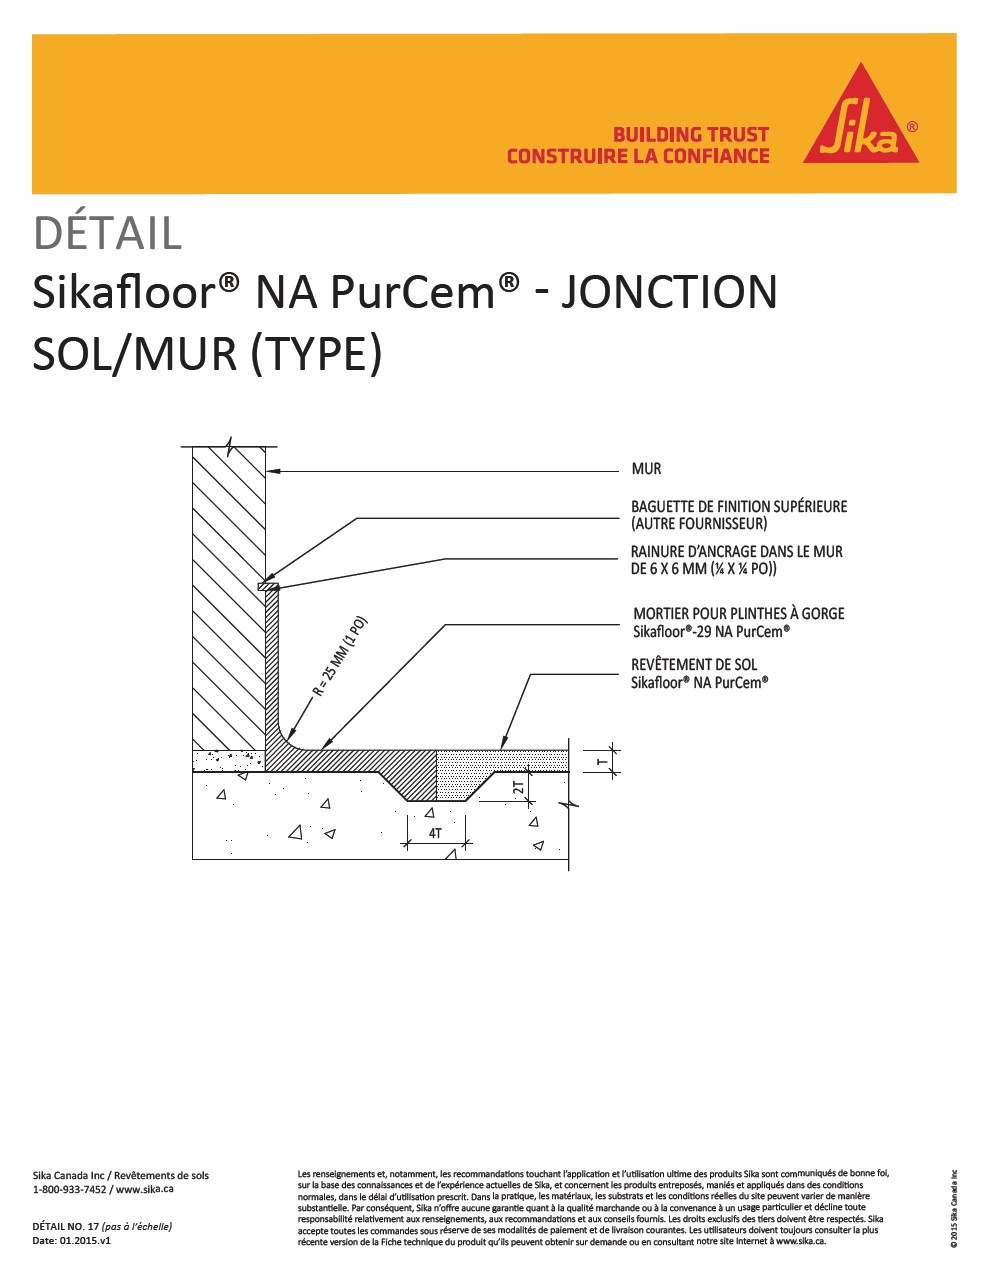  17-Sikafloor NA PurCem-Jonction sol-mur 